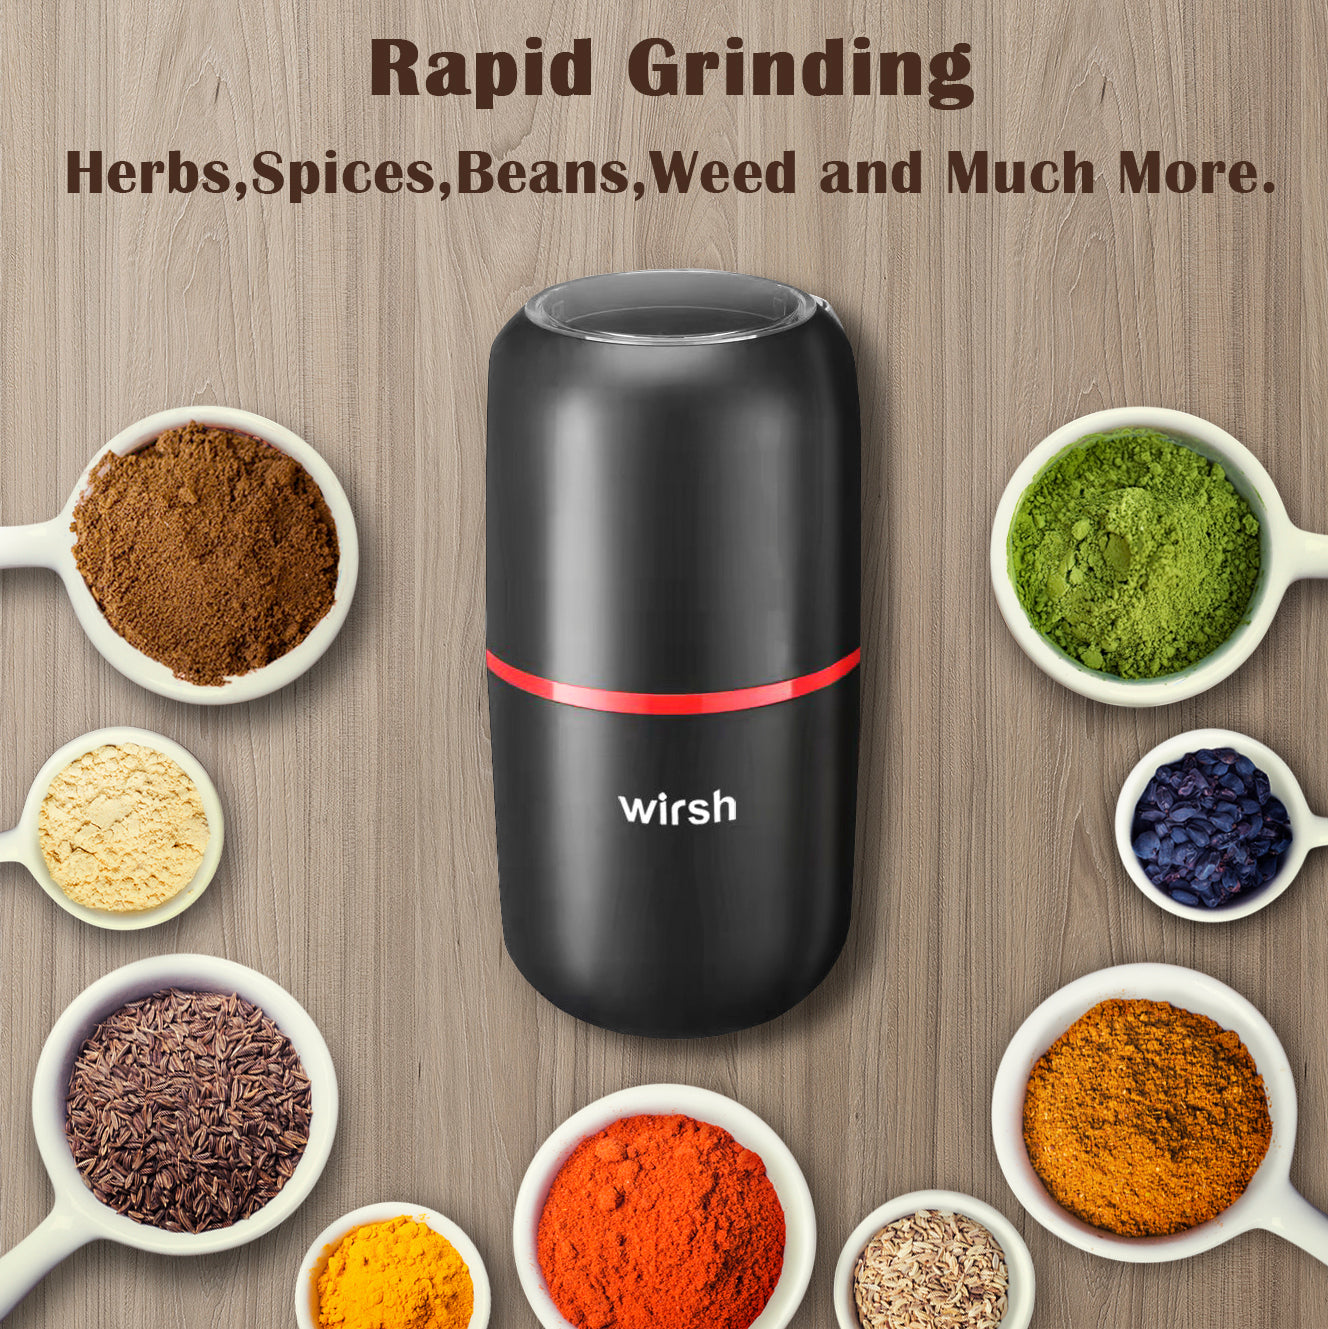 <img src="coffee grinder.jpg" alt="wirsh-versatile-grinder"/>